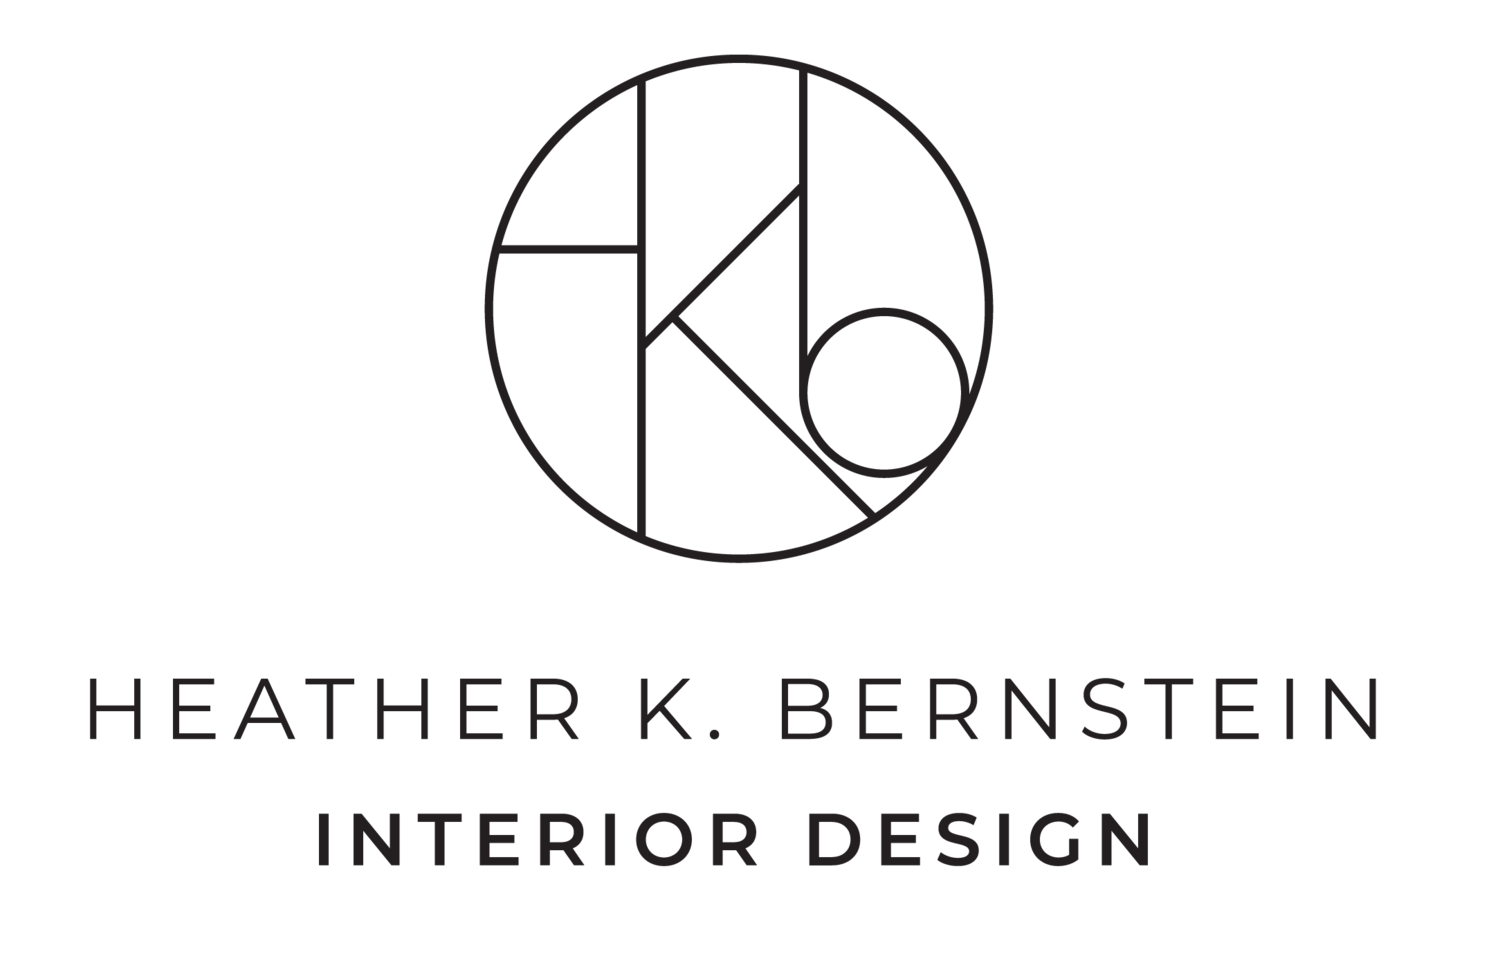 Heather K. Bernstein Interior Design